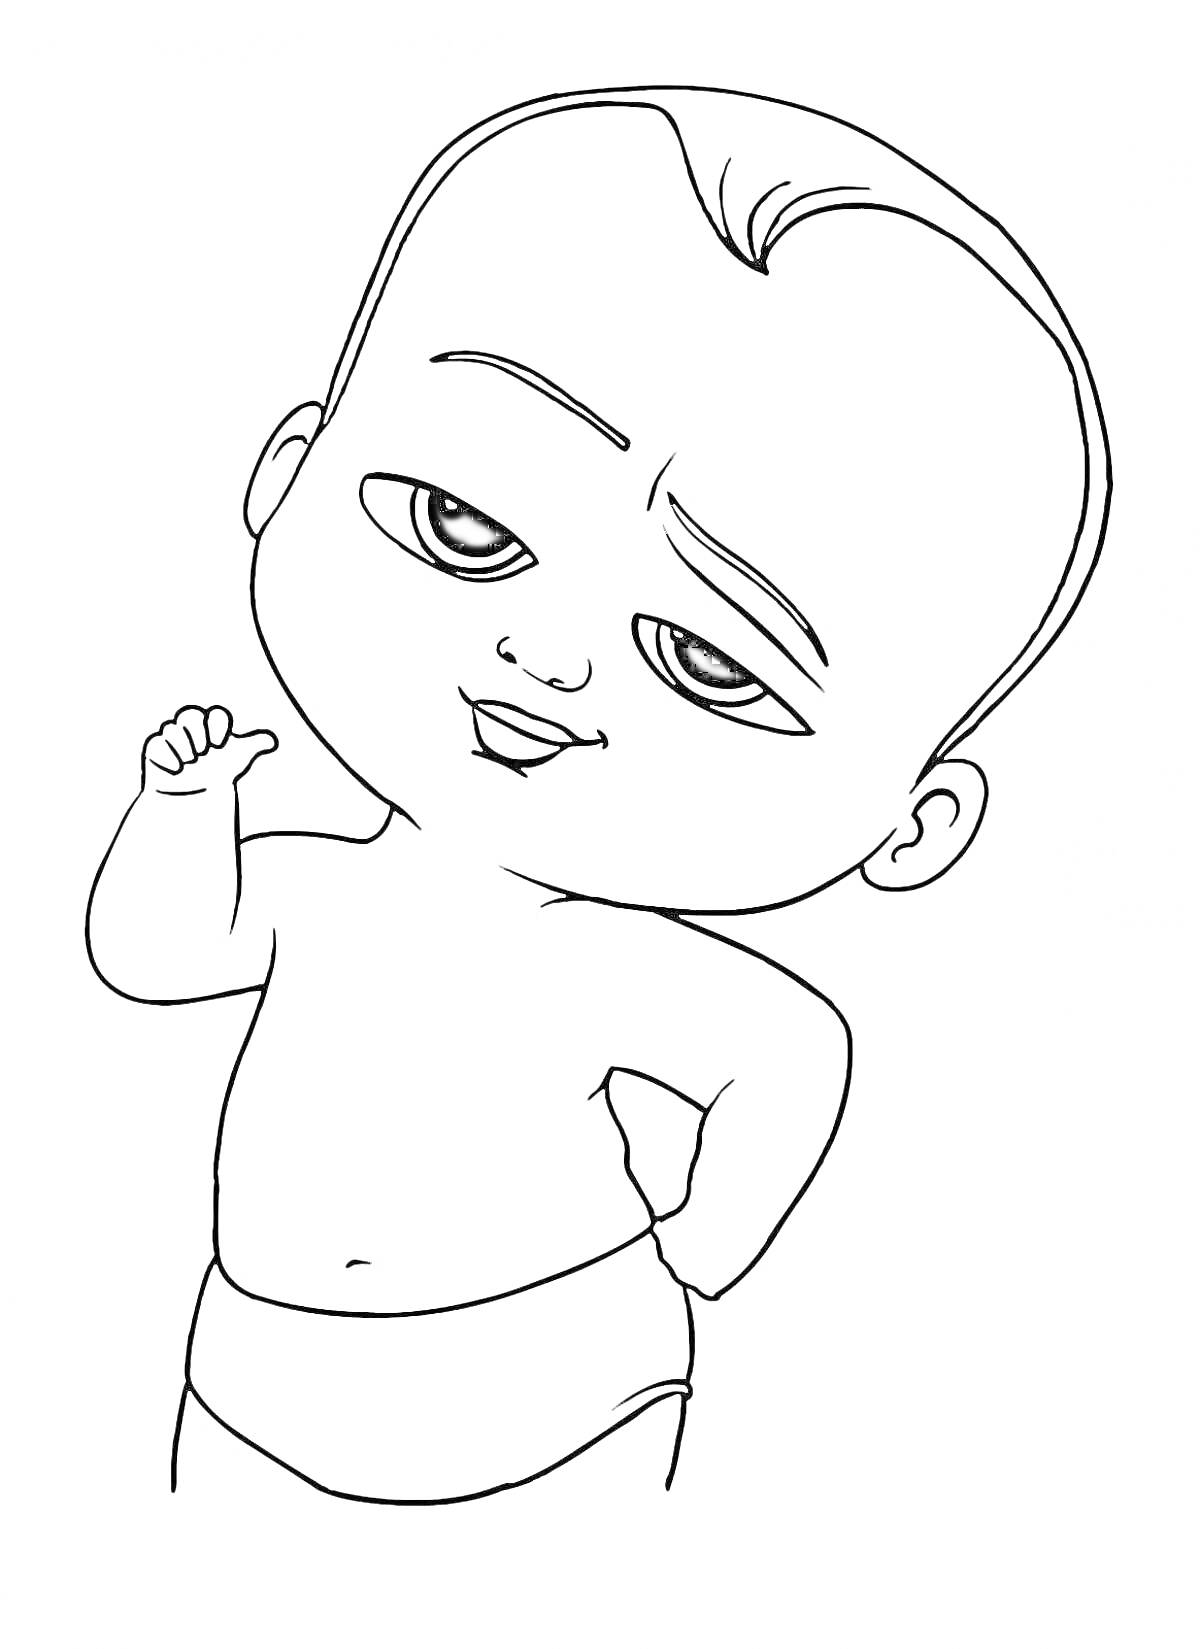 Раскраска Малыш в подгузнике с выражением лица и поднятой рукой